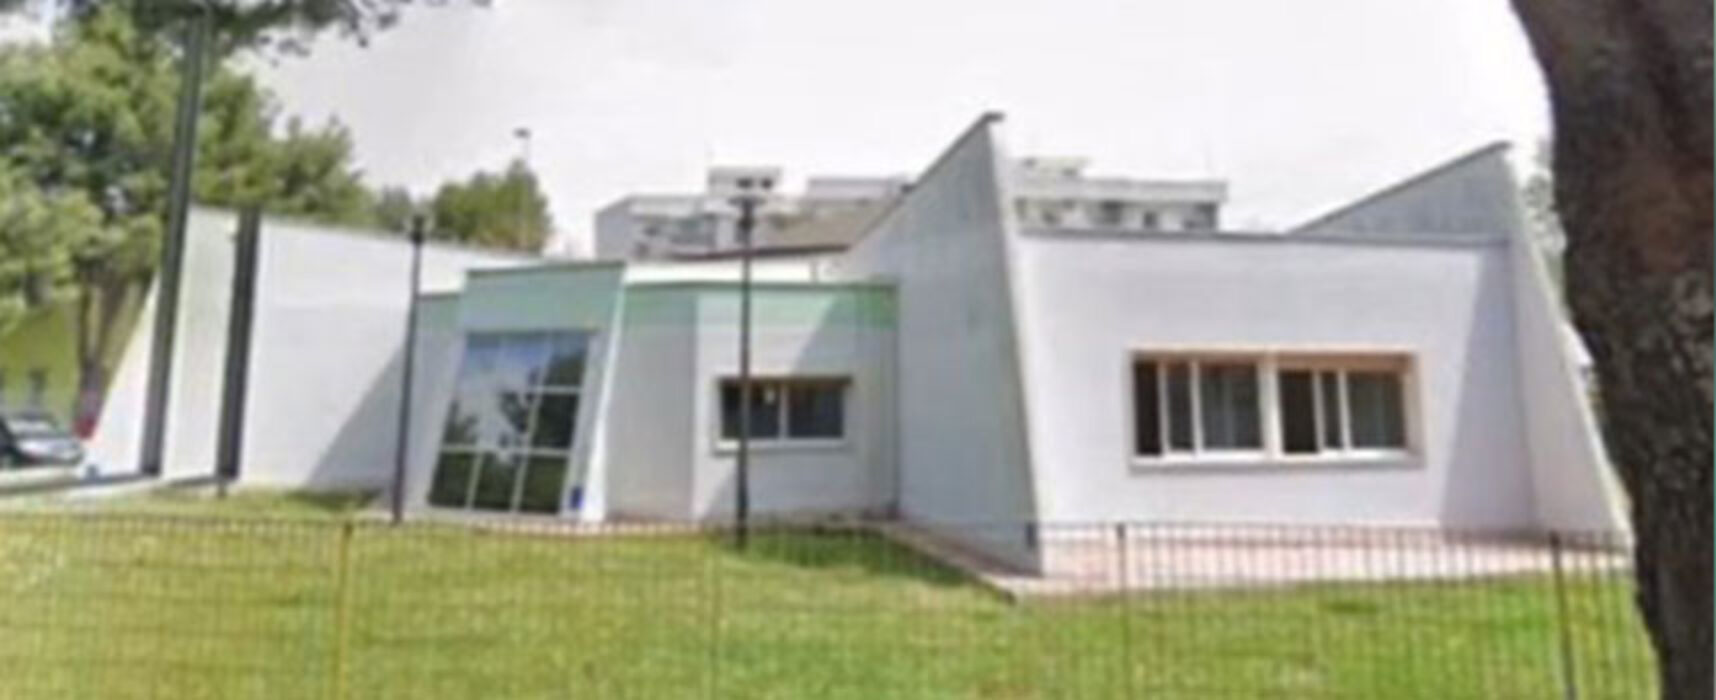 Spina: “La Svolta di Angarano e Silvestris chiude anche l’asilo nido comunale Montessori”